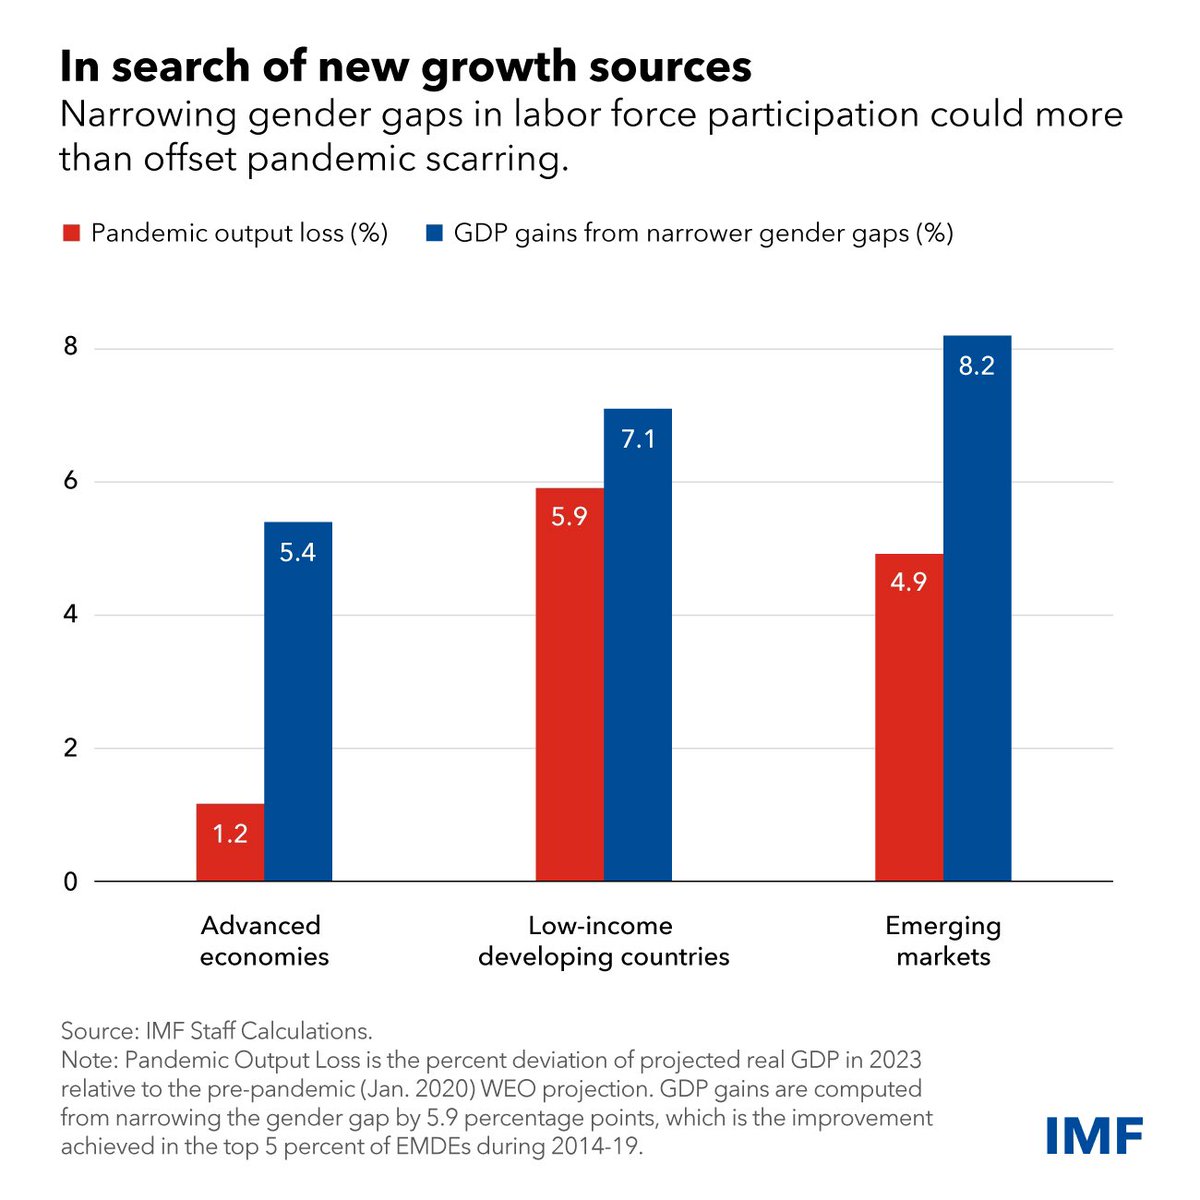 El 47 por ciento de las mujeres están activas en los mercados laborales, en comparación con el 72 por ciento de los hombres. @IMFNews 
#BrechaDeGénero #GenderGap #Empleo
#Equidad #Igualdad
#LaborMarket #MercadoLaboral
#Mujeres